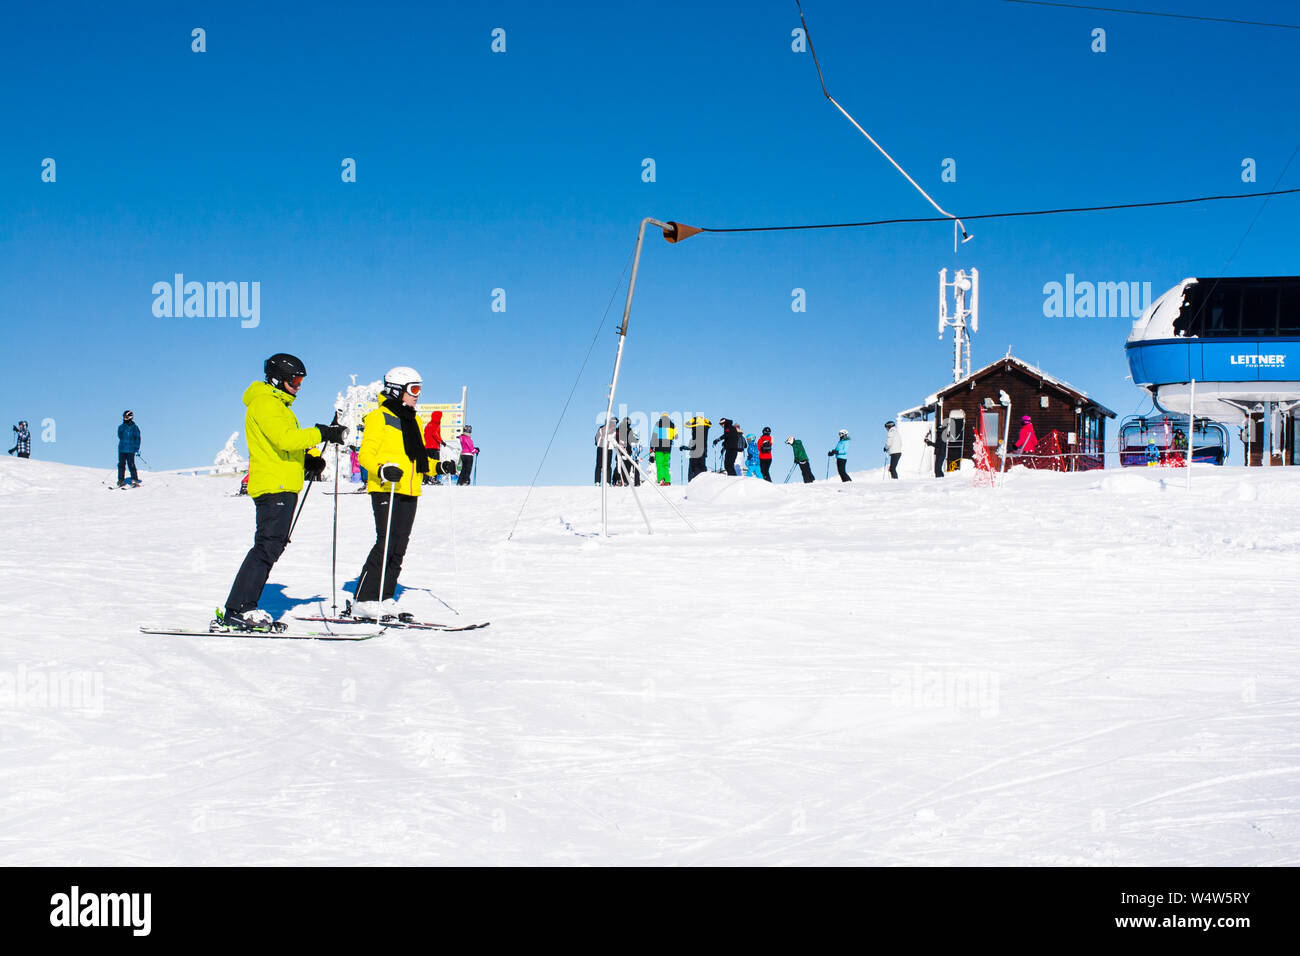 Kopaonik, Serbien - Januar 20, 2016: Skigebiet Kopaonik, Serbien, Skilift, Skipiste, Menschen, die von der Lift und Skifahren Stockfoto